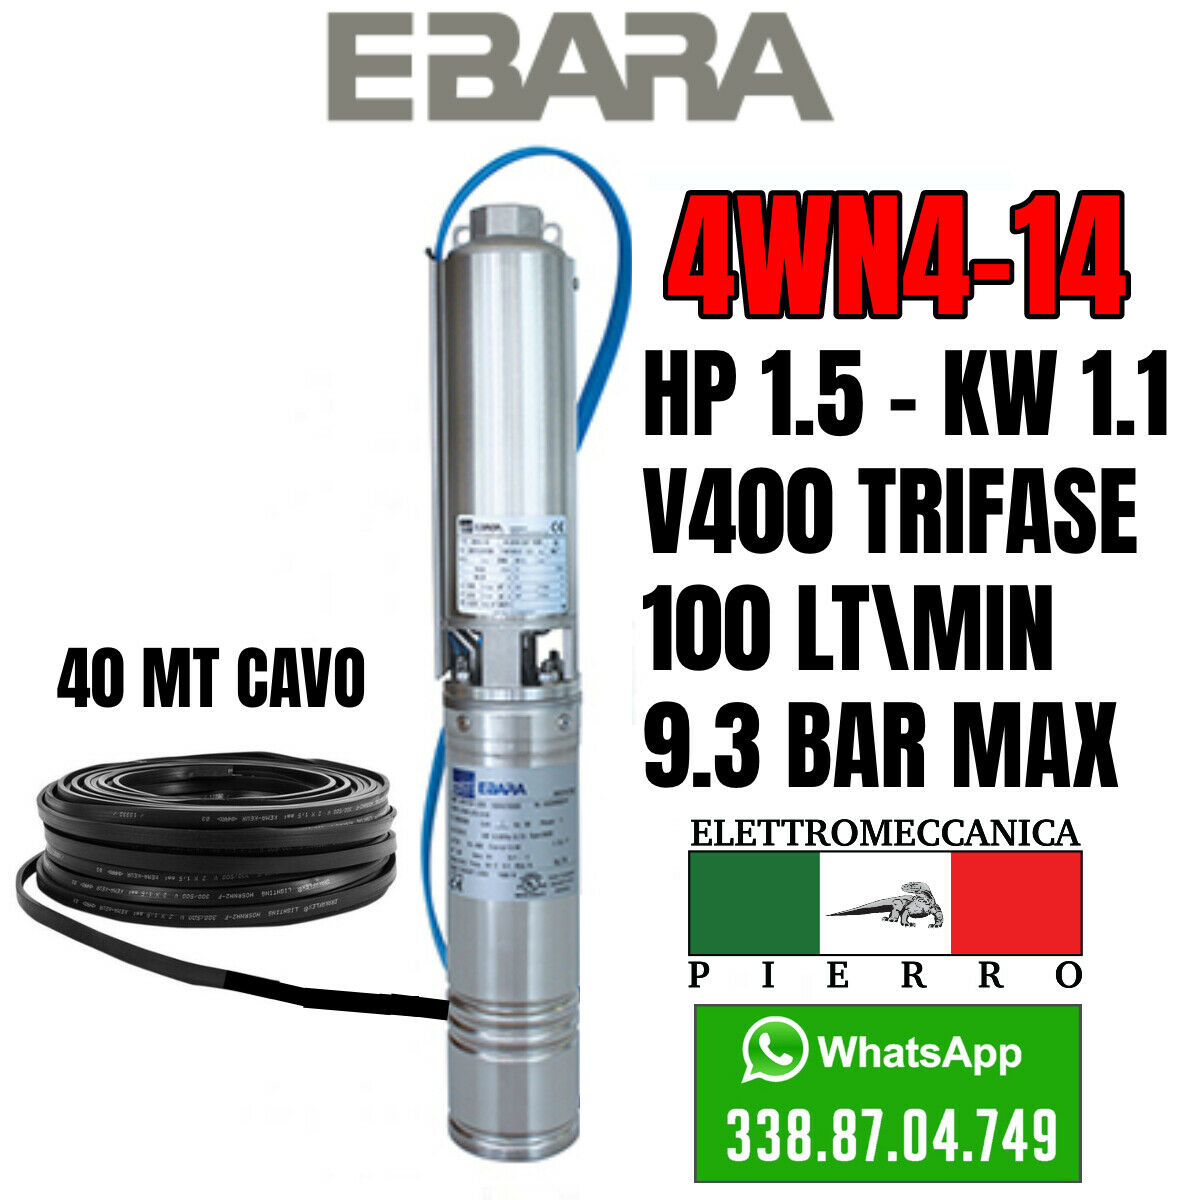 miniatura 25  - POMPA SOMMERSA EBARA 4WN4-14 HP1.5 100LT/MIN 9.3BAR MAX 4GS11 LOWARA COMPATIBILE